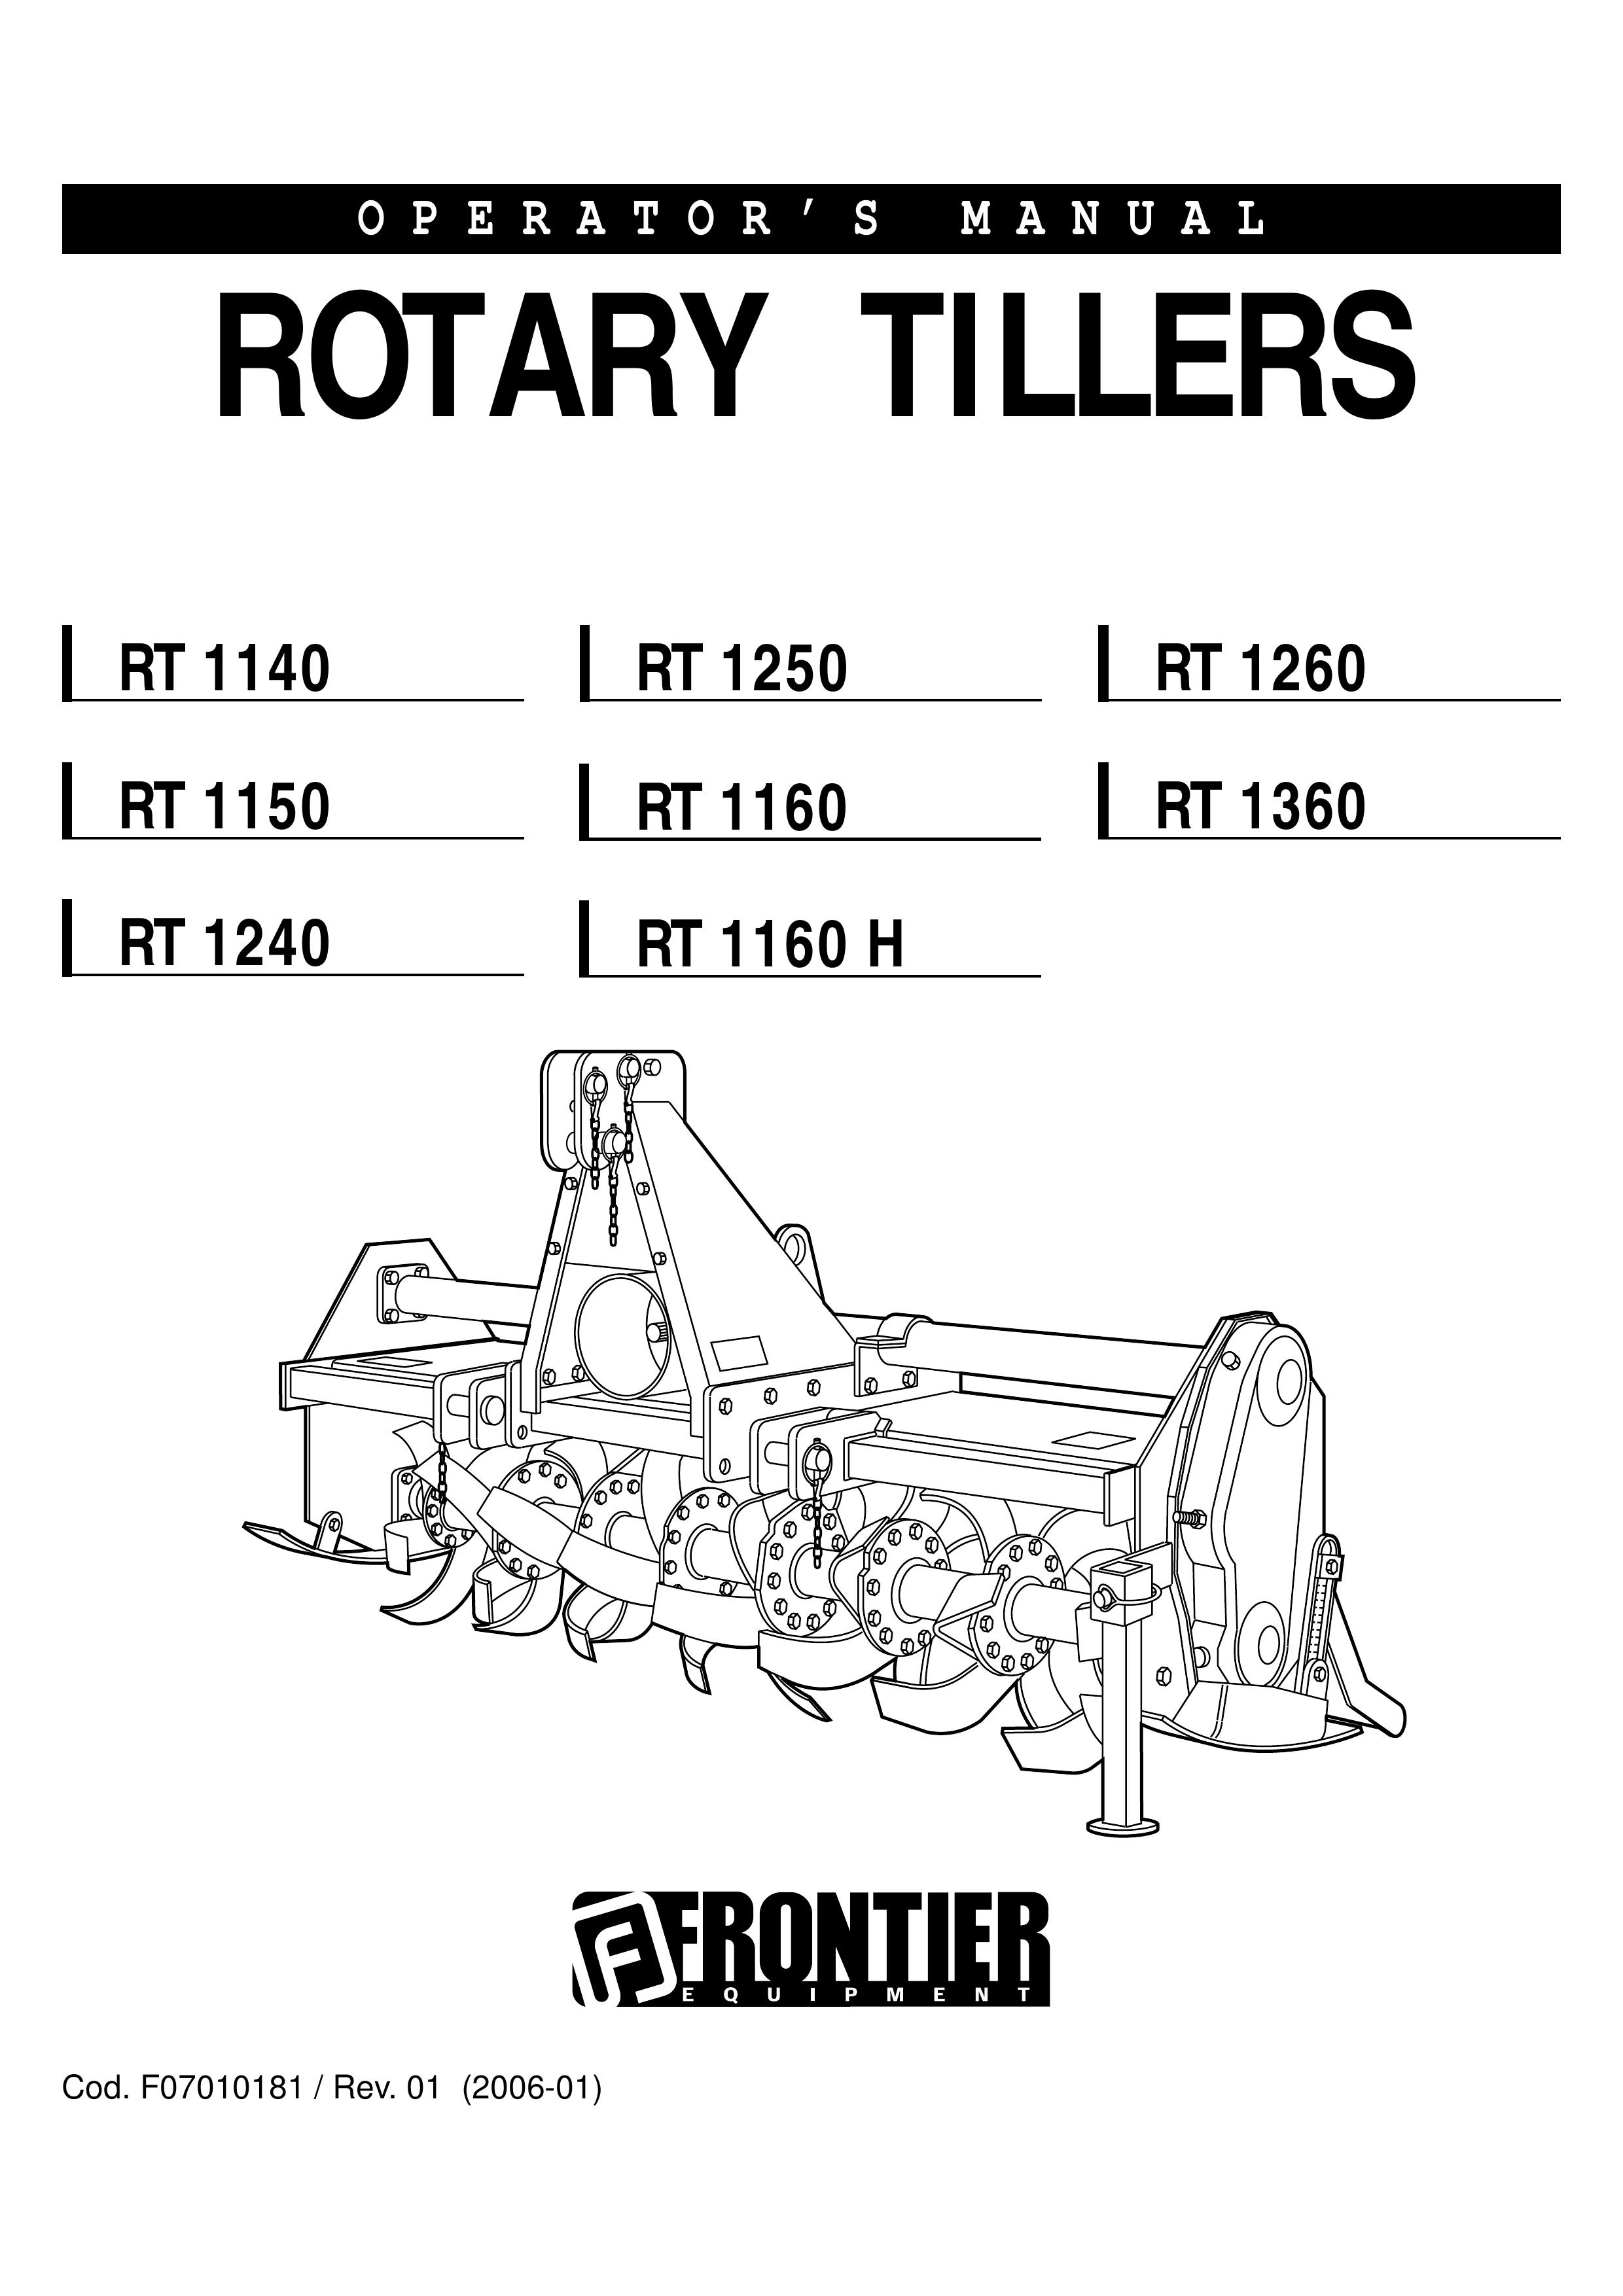 John Deere RT1250 Tiller User Manual